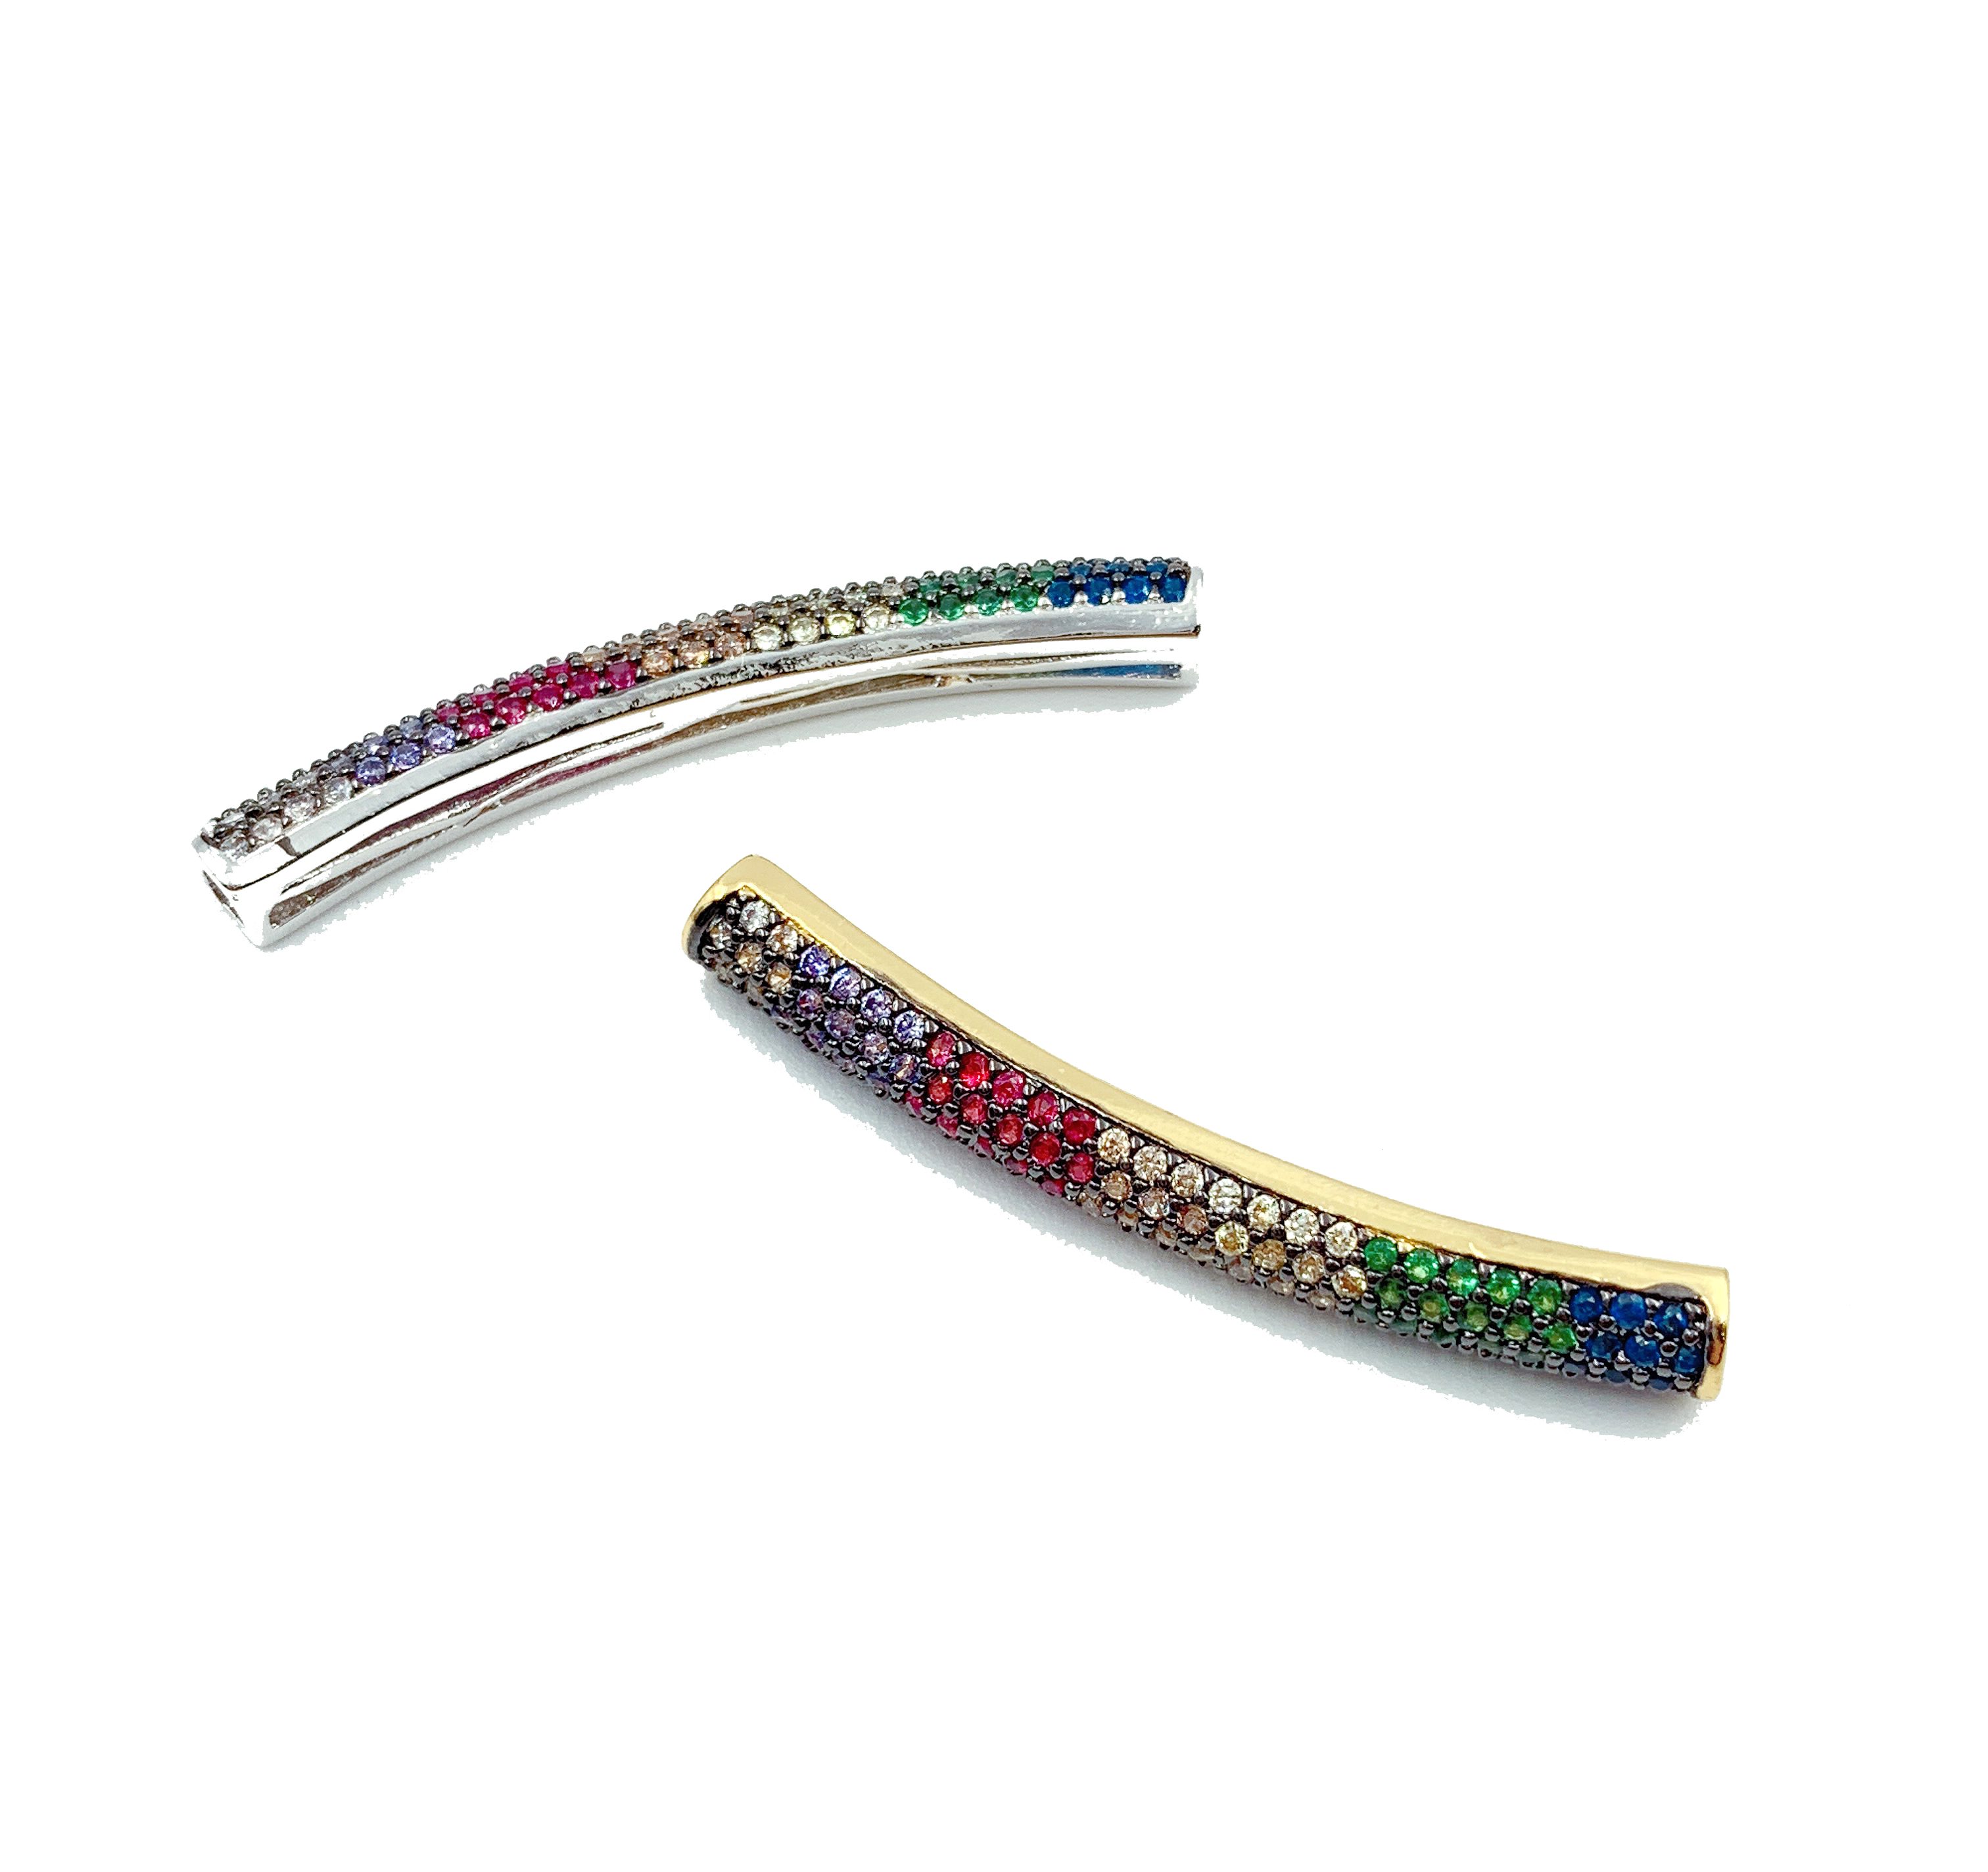 150 pcs 3.2 mm Lisse Noir Couleur Spacer Beads Craft Findings GRATUIT UK P P E107 